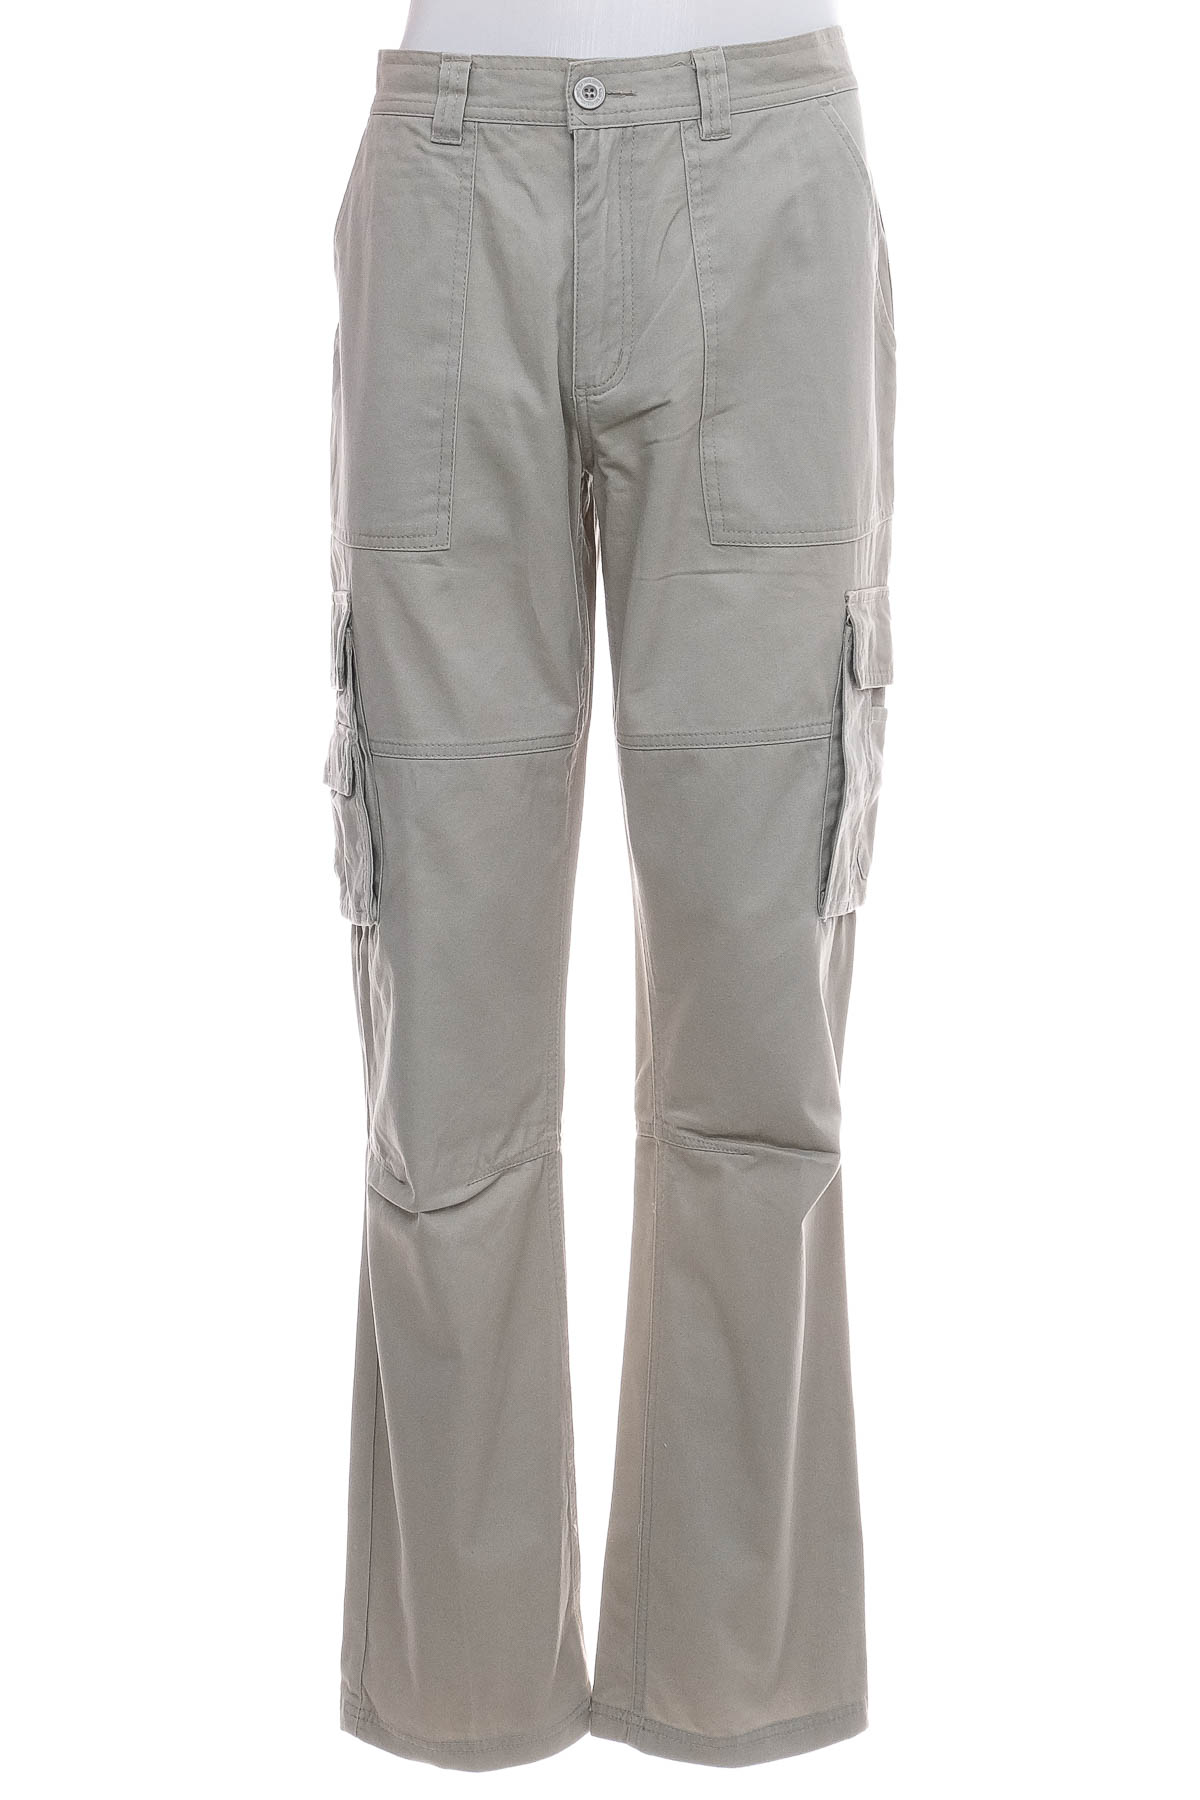 Men's trousers - Bpc selection bonprix collection - 0